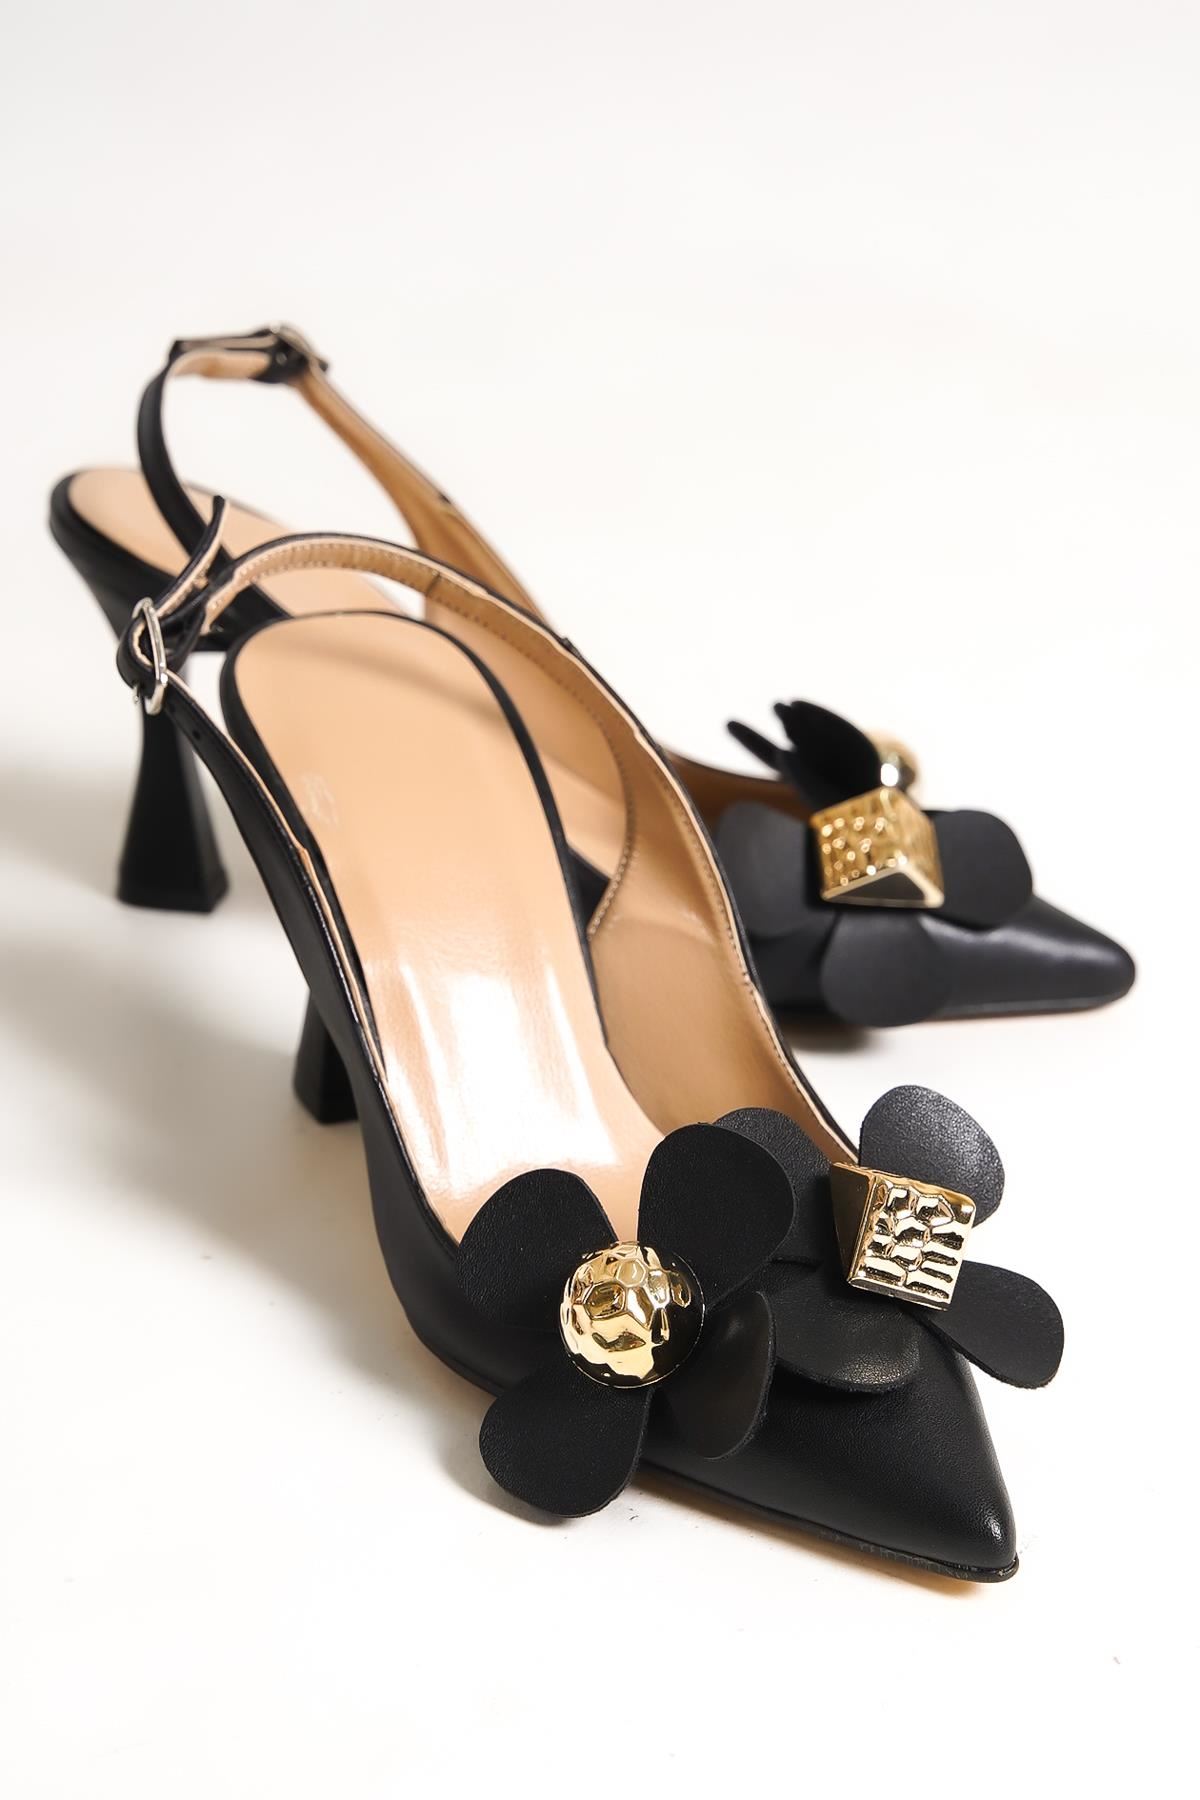 Chiara Kadın Topuklu Ayakkabı Siyah Çiçekli